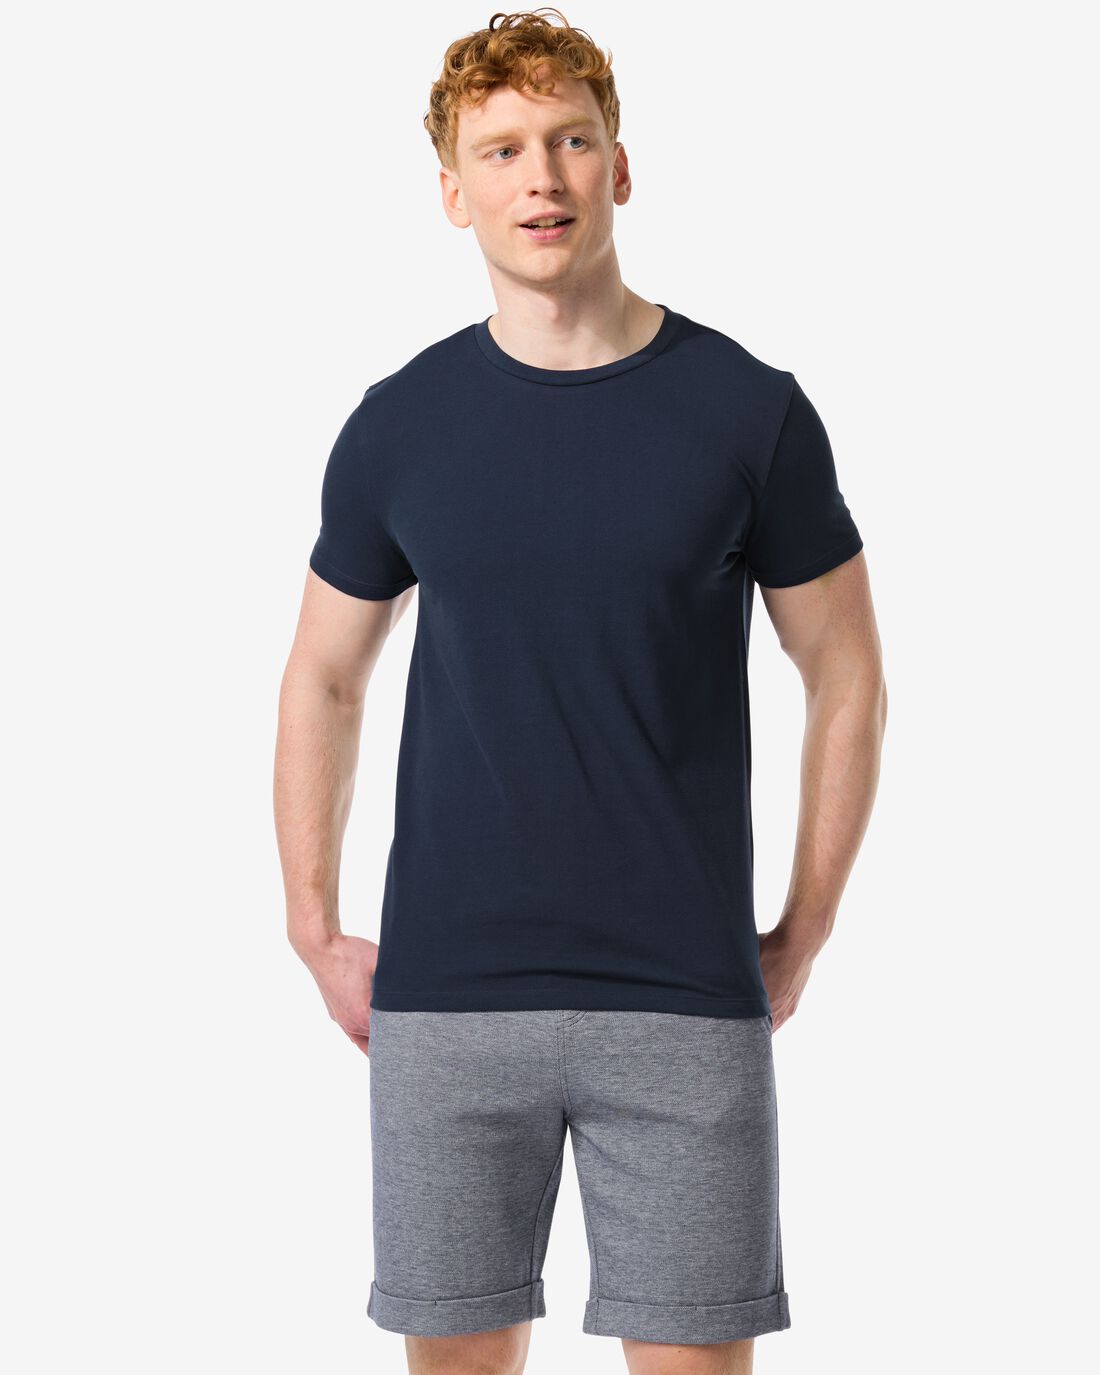 HEMA Heren T-shirt Piqué Donkerblauw (donkerblauw)